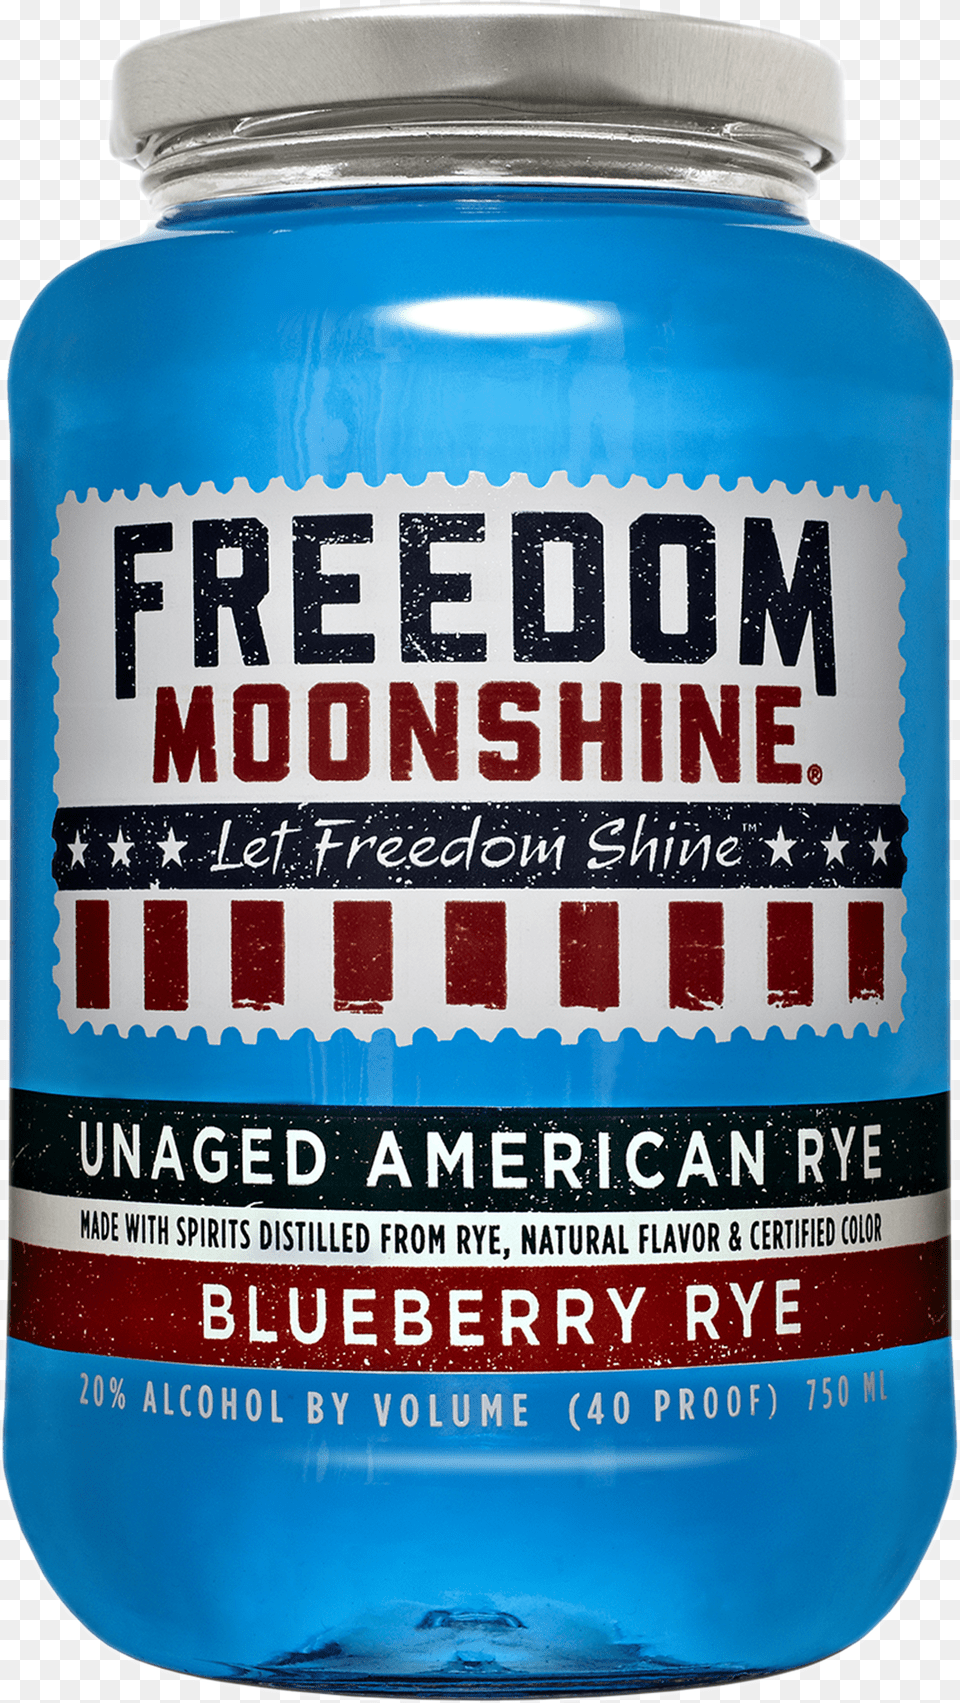 Details About Freedom Moonshine Whisky Bottle Energy Drink, Jar, Alcohol, Beer, Beverage Free Transparent Png